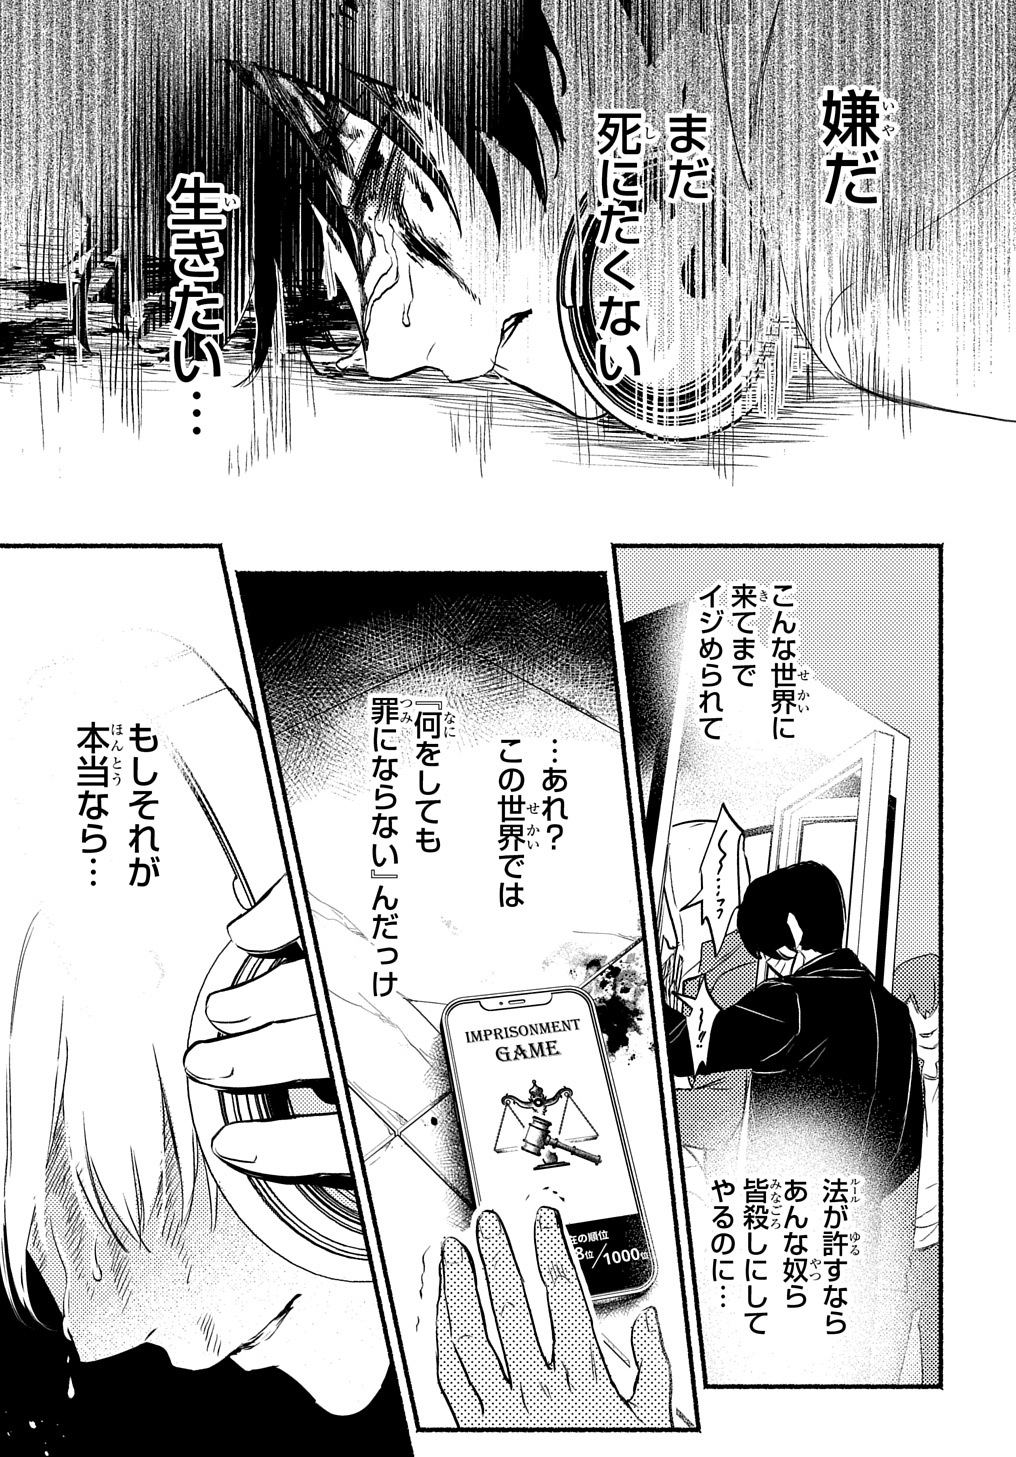 Crime Game – Houritsu no Nai Sekai - Chapter 1.3 - Page 1